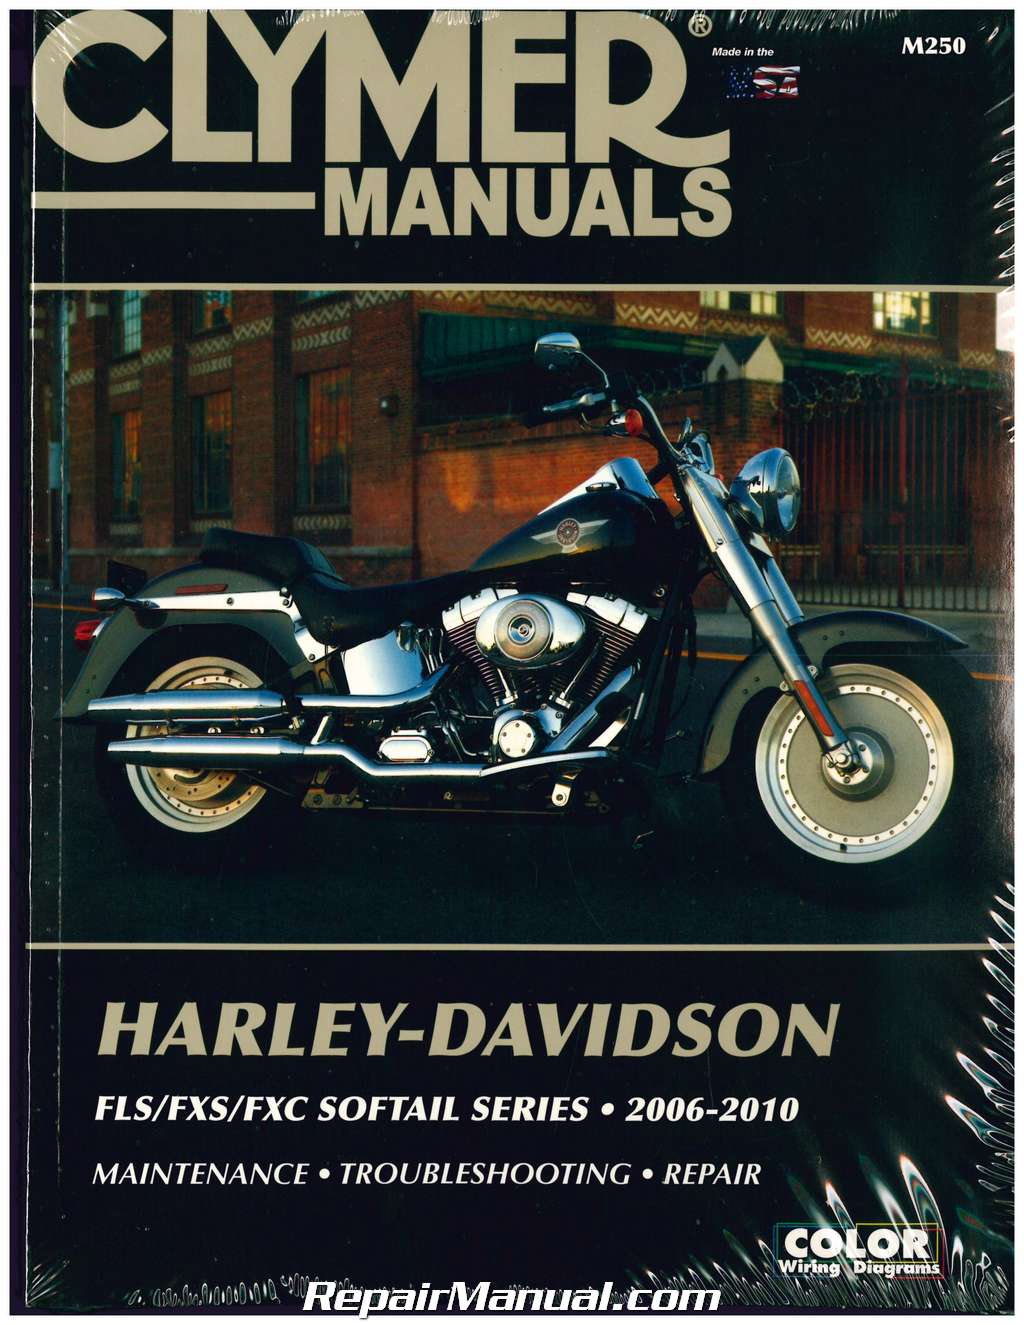 Harley Davidson Softail Motorcycle Manual 20062010 Clymer